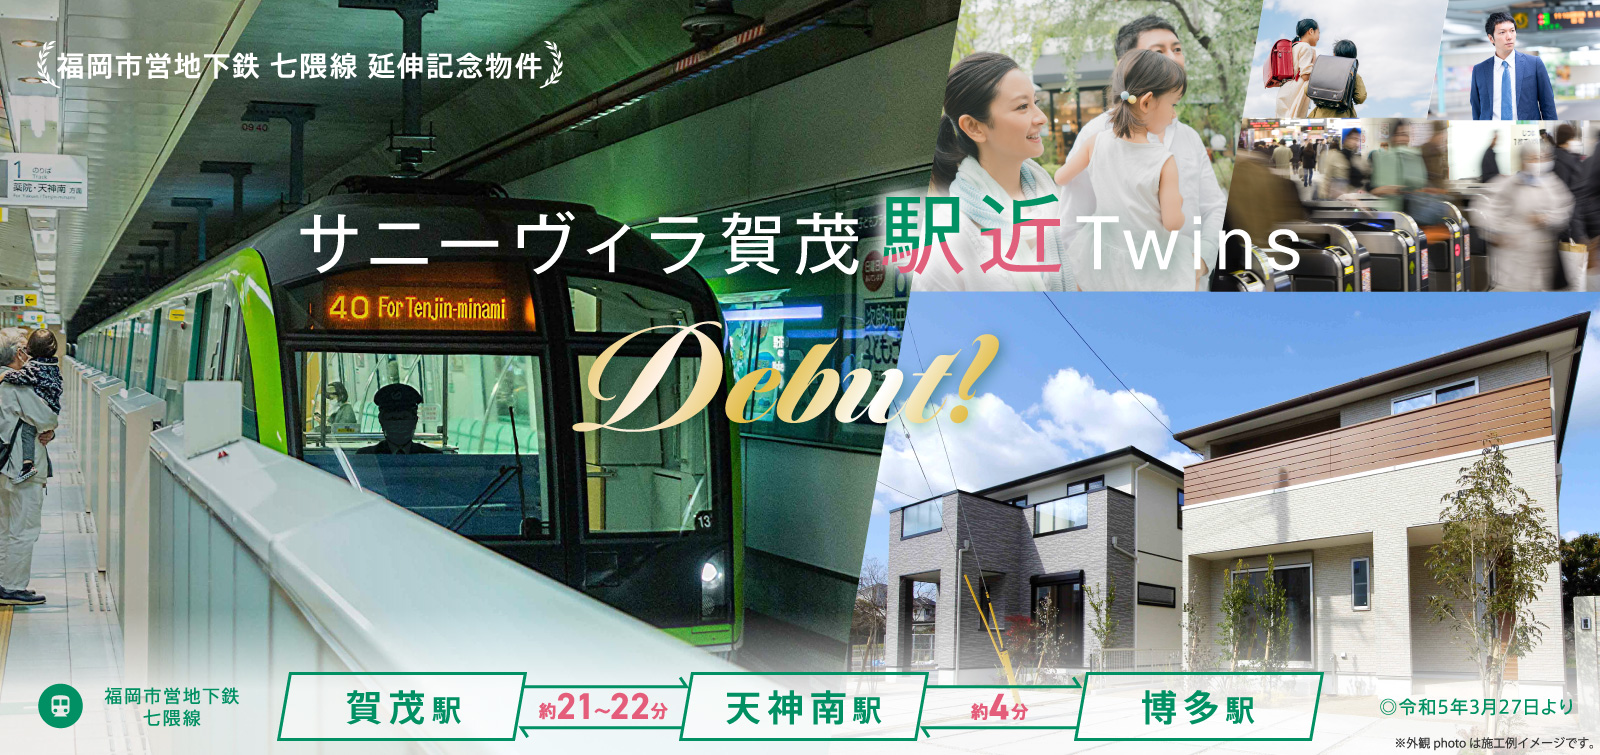 地下鉄七隈線延伸記念物件 サニーヴィラ賀茂駅近Twins